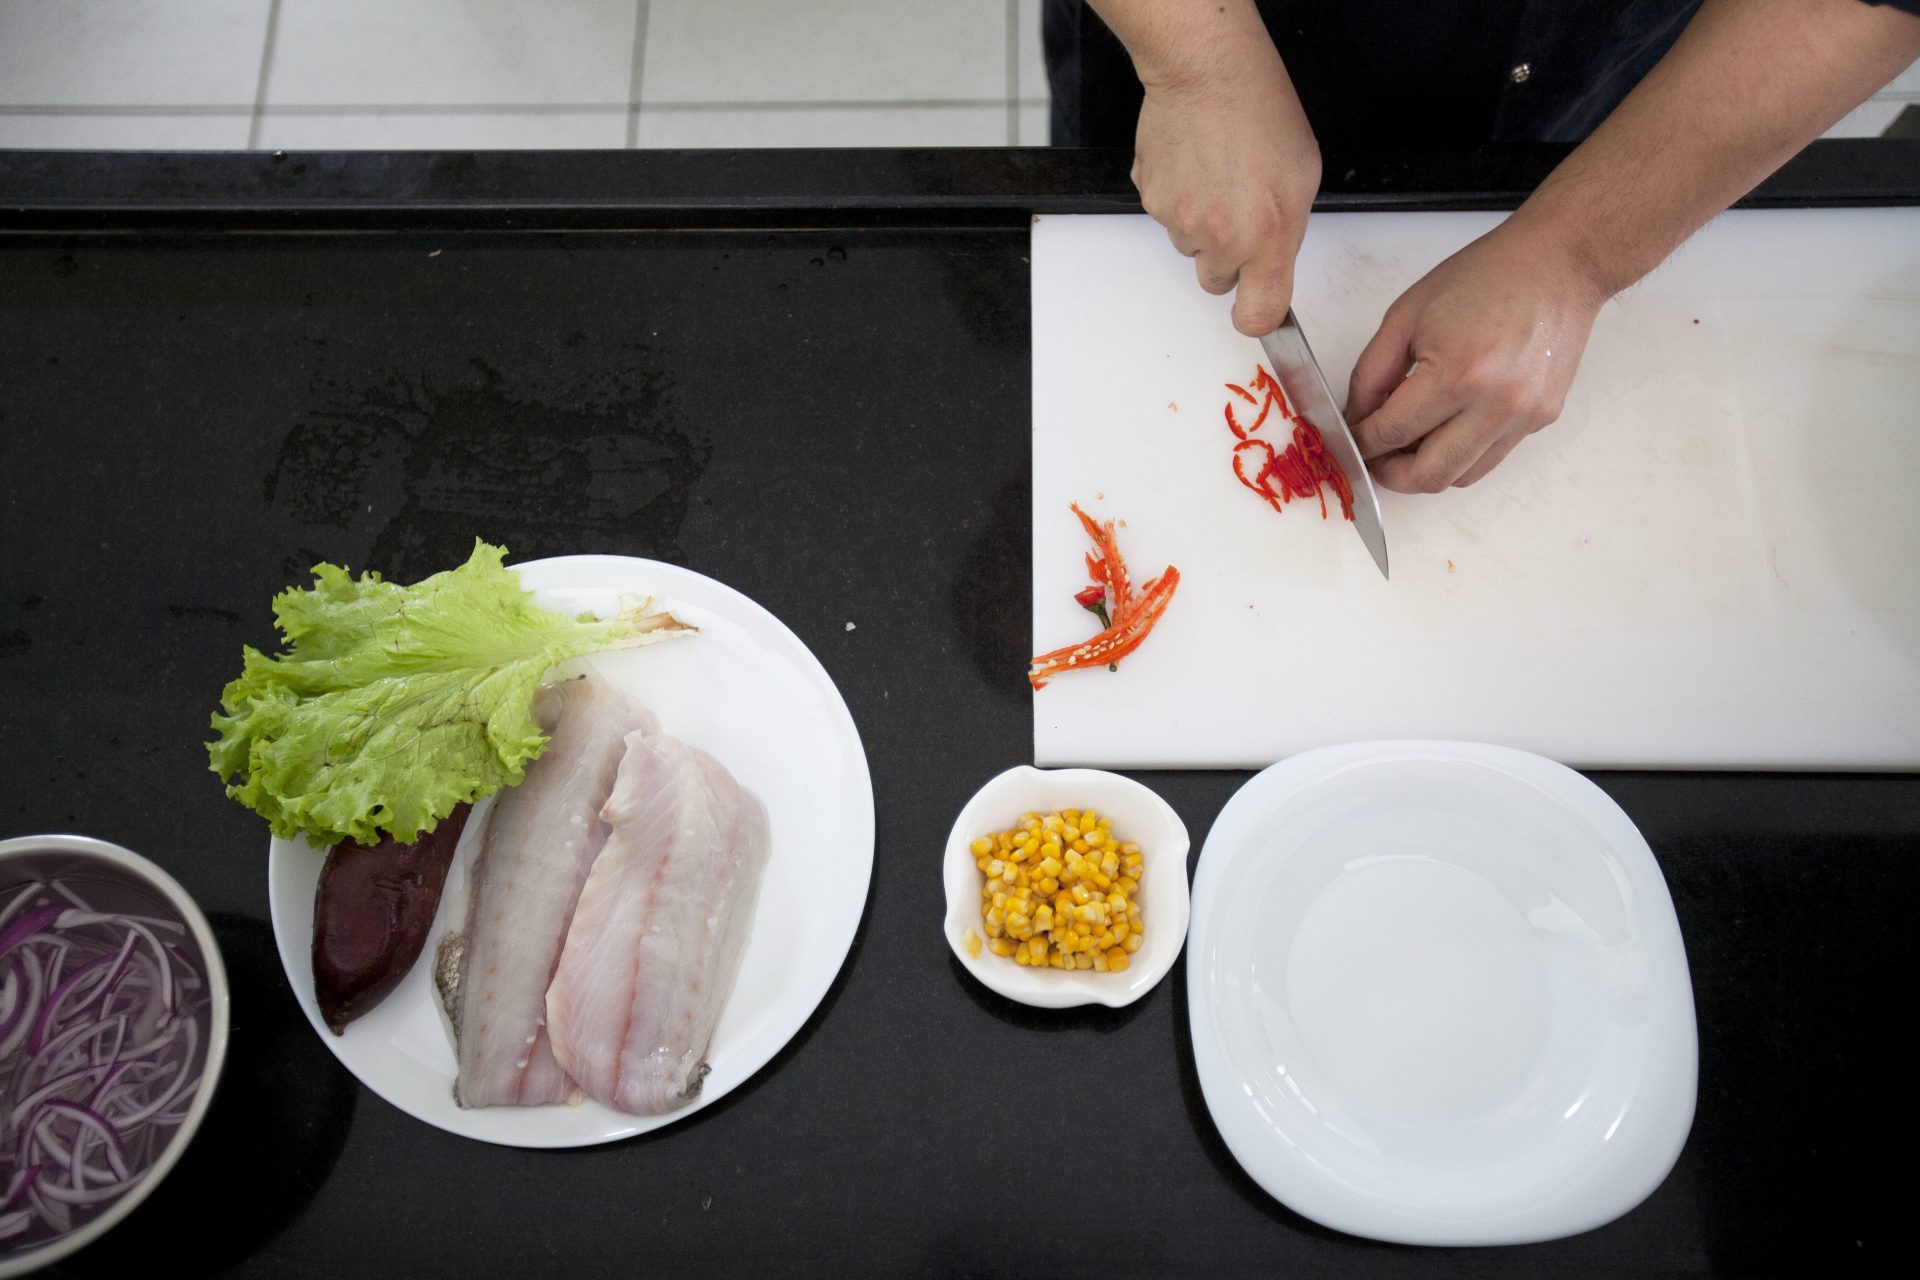 Un cocinero prepara un plato saluldable. Uno de cada cinco adolescentes hace dieta, la mayoría por motivos estéticos.